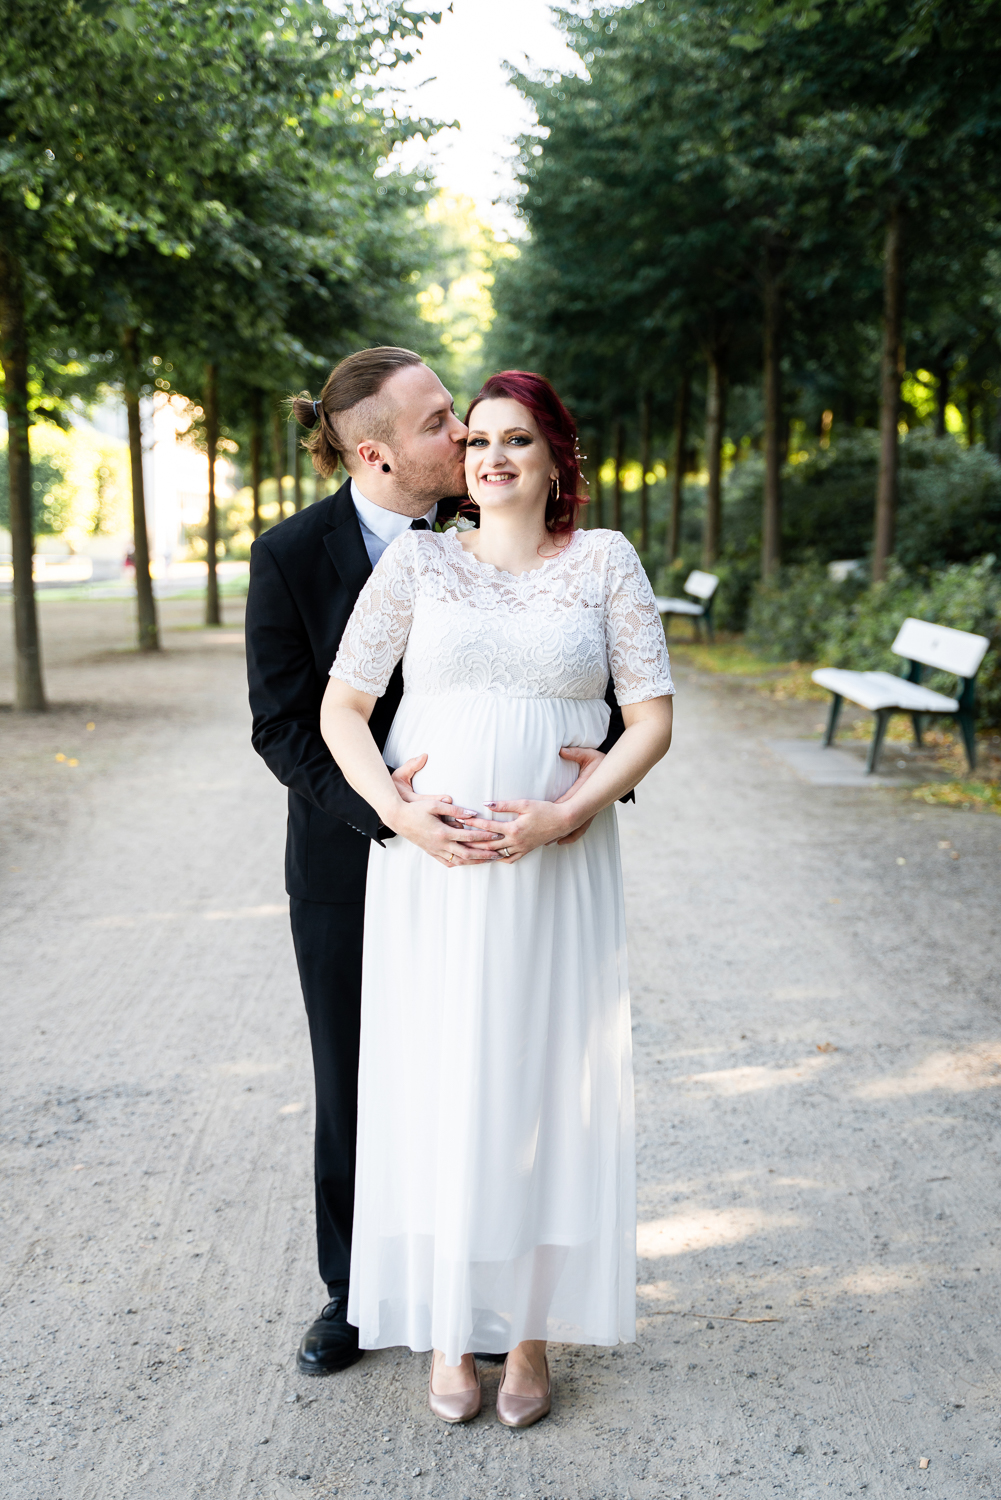 Mann küsst braut auf die Schläfe Hochzeitsfotografin bremen